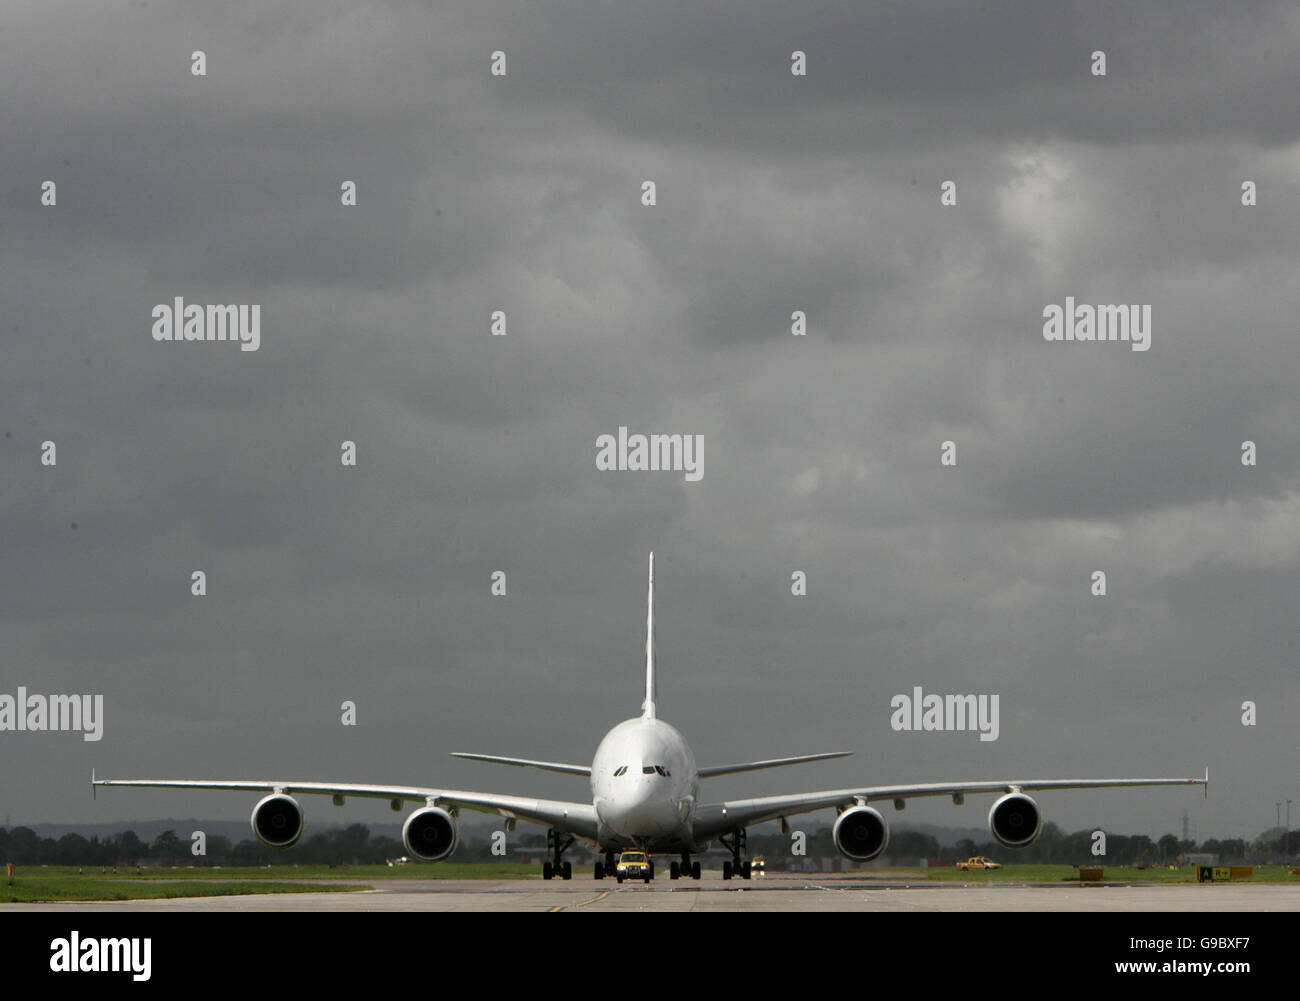 Le plus grand avion de ligne au monde, le géant Airbus A380 de 555 places, après son atterrissage à l'aéroport de Londres Heathrow. Banque D'Images